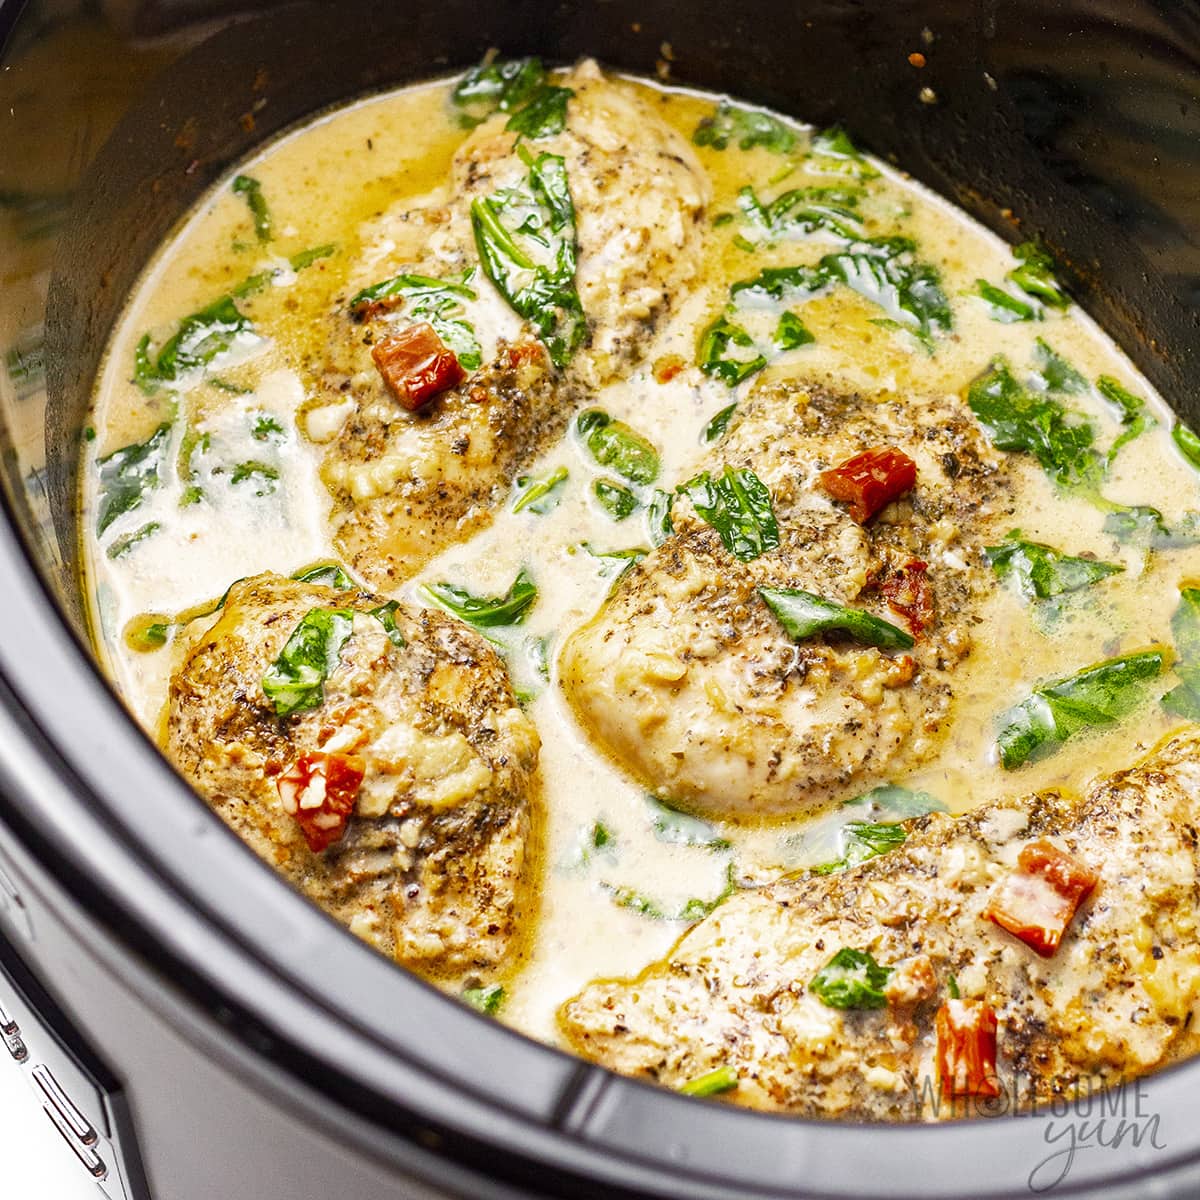 Tuscan garlic chicken in a Crock Pot.